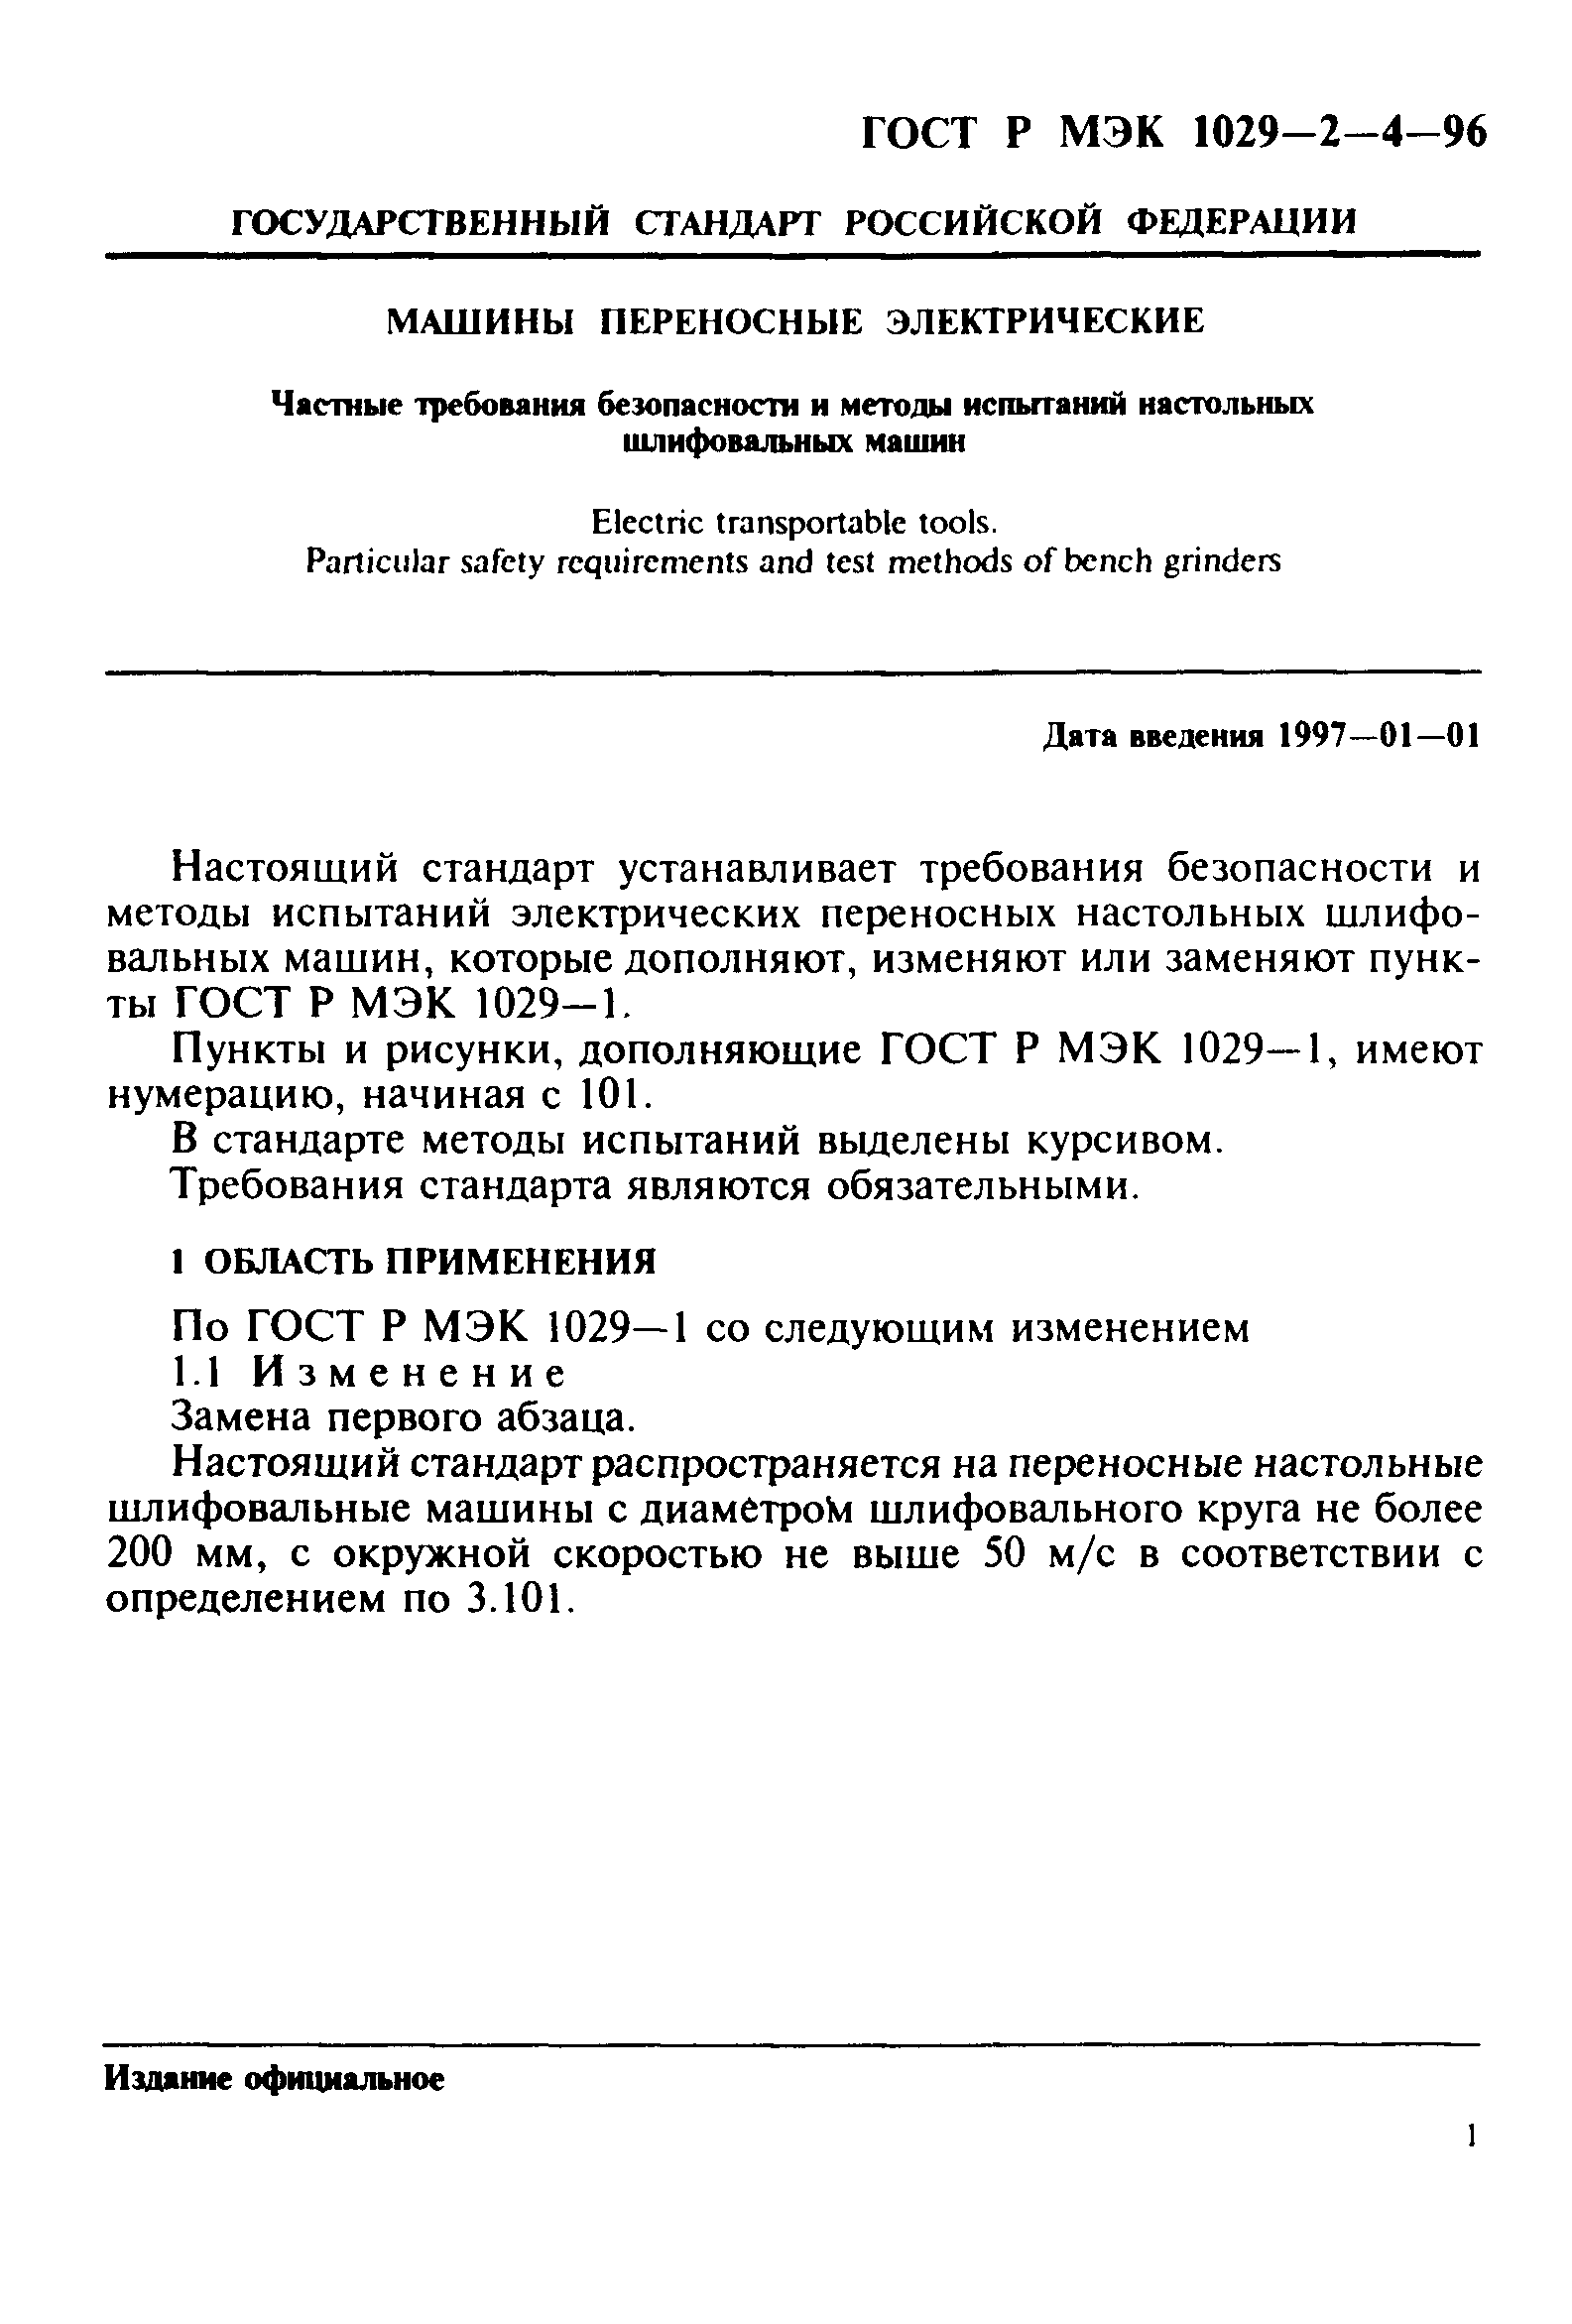 ГОСТ Р МЭК 1029-2-4-96